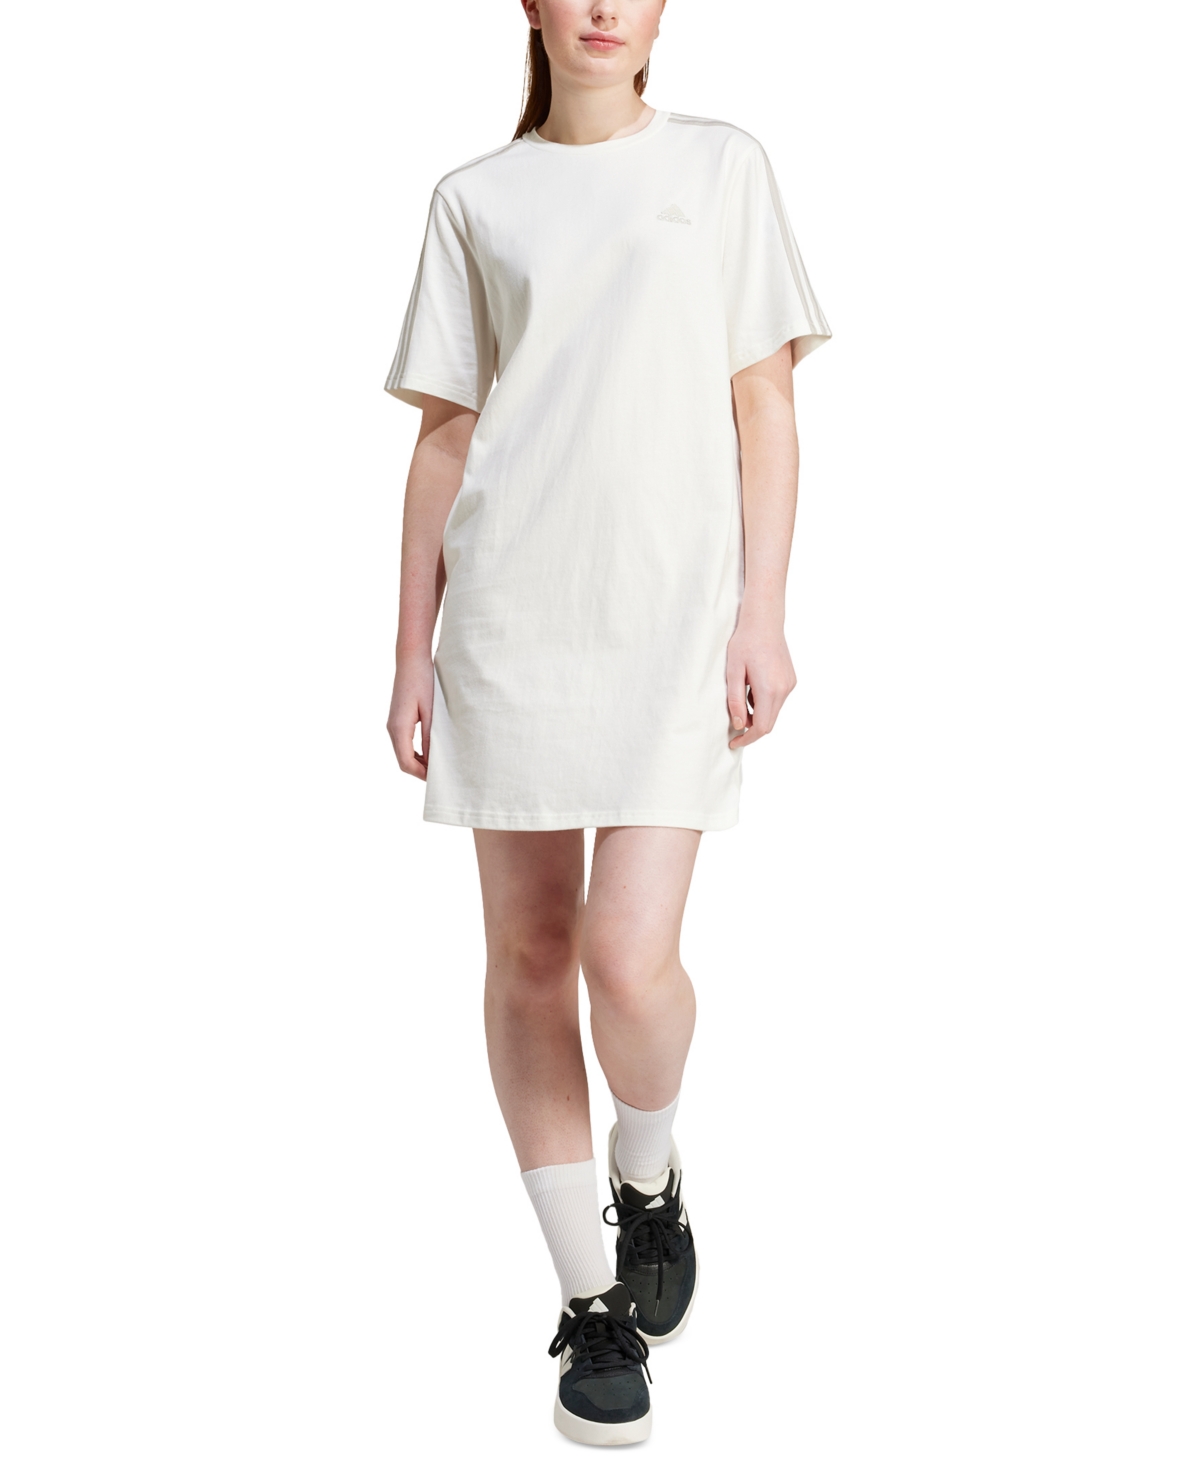 Women's Active Essentials 3-Stripes Single Jersey Boyfriend Tee Dress - Off White